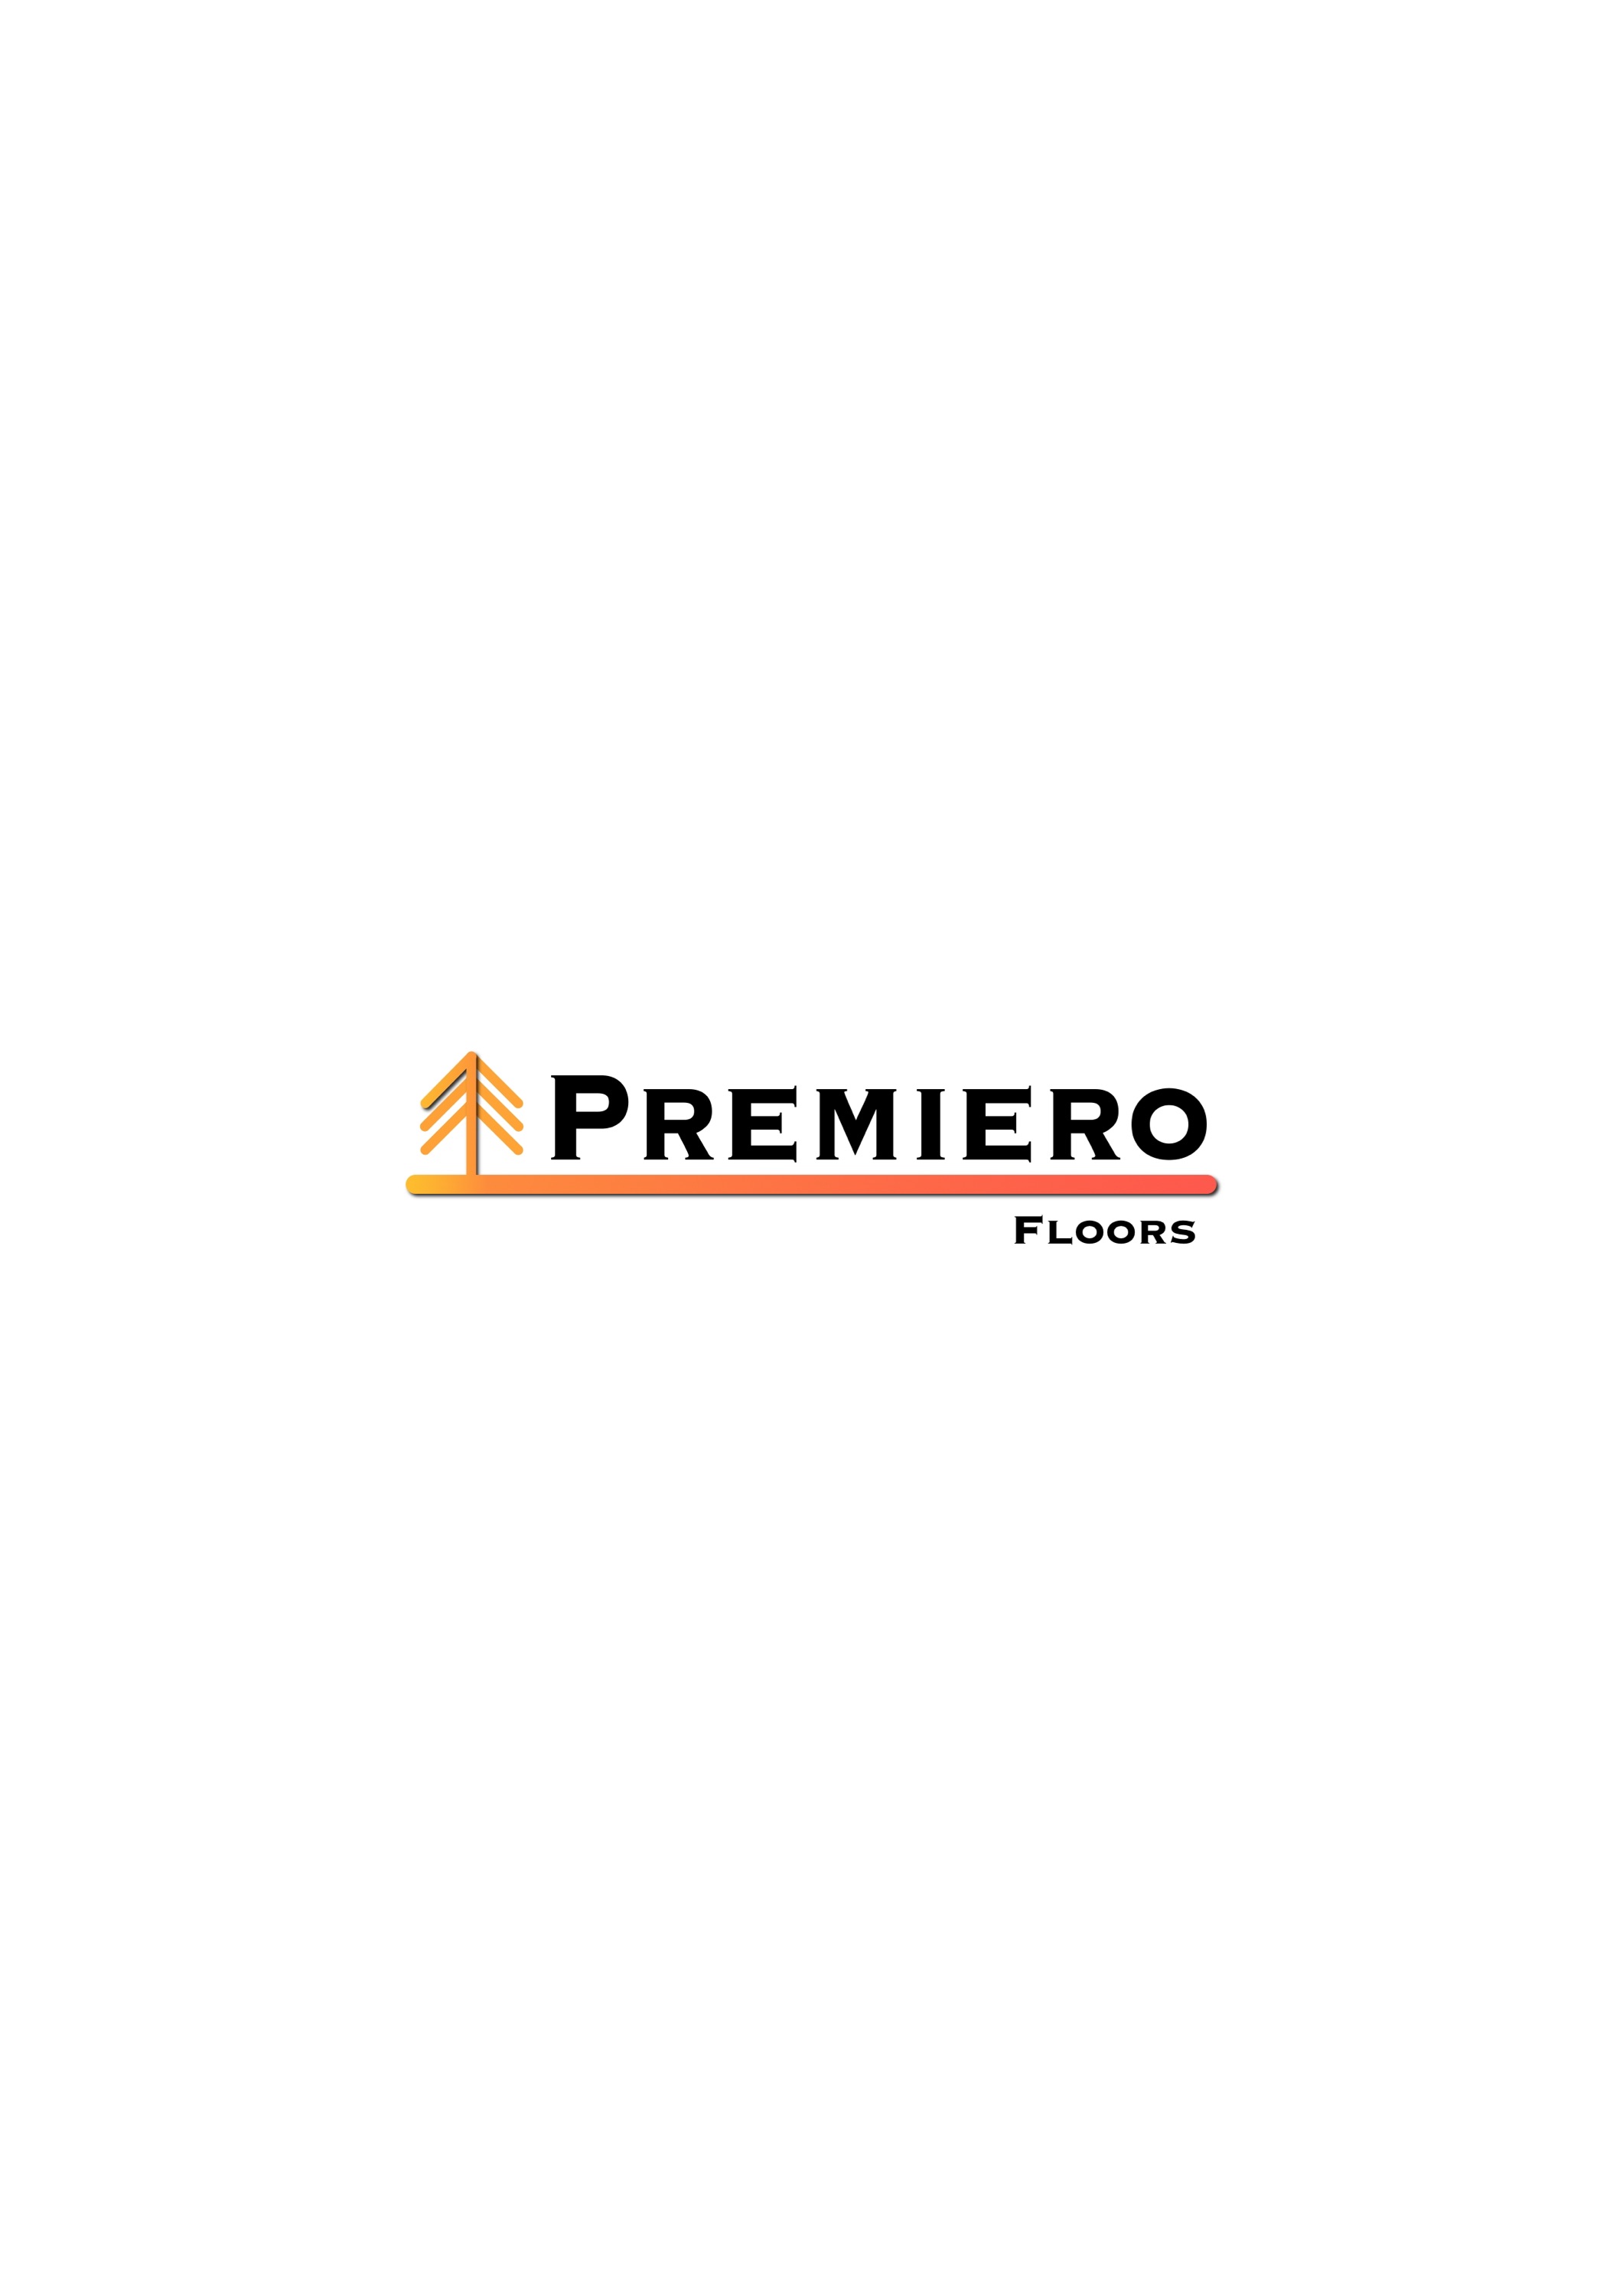 Premiero Floors Logo